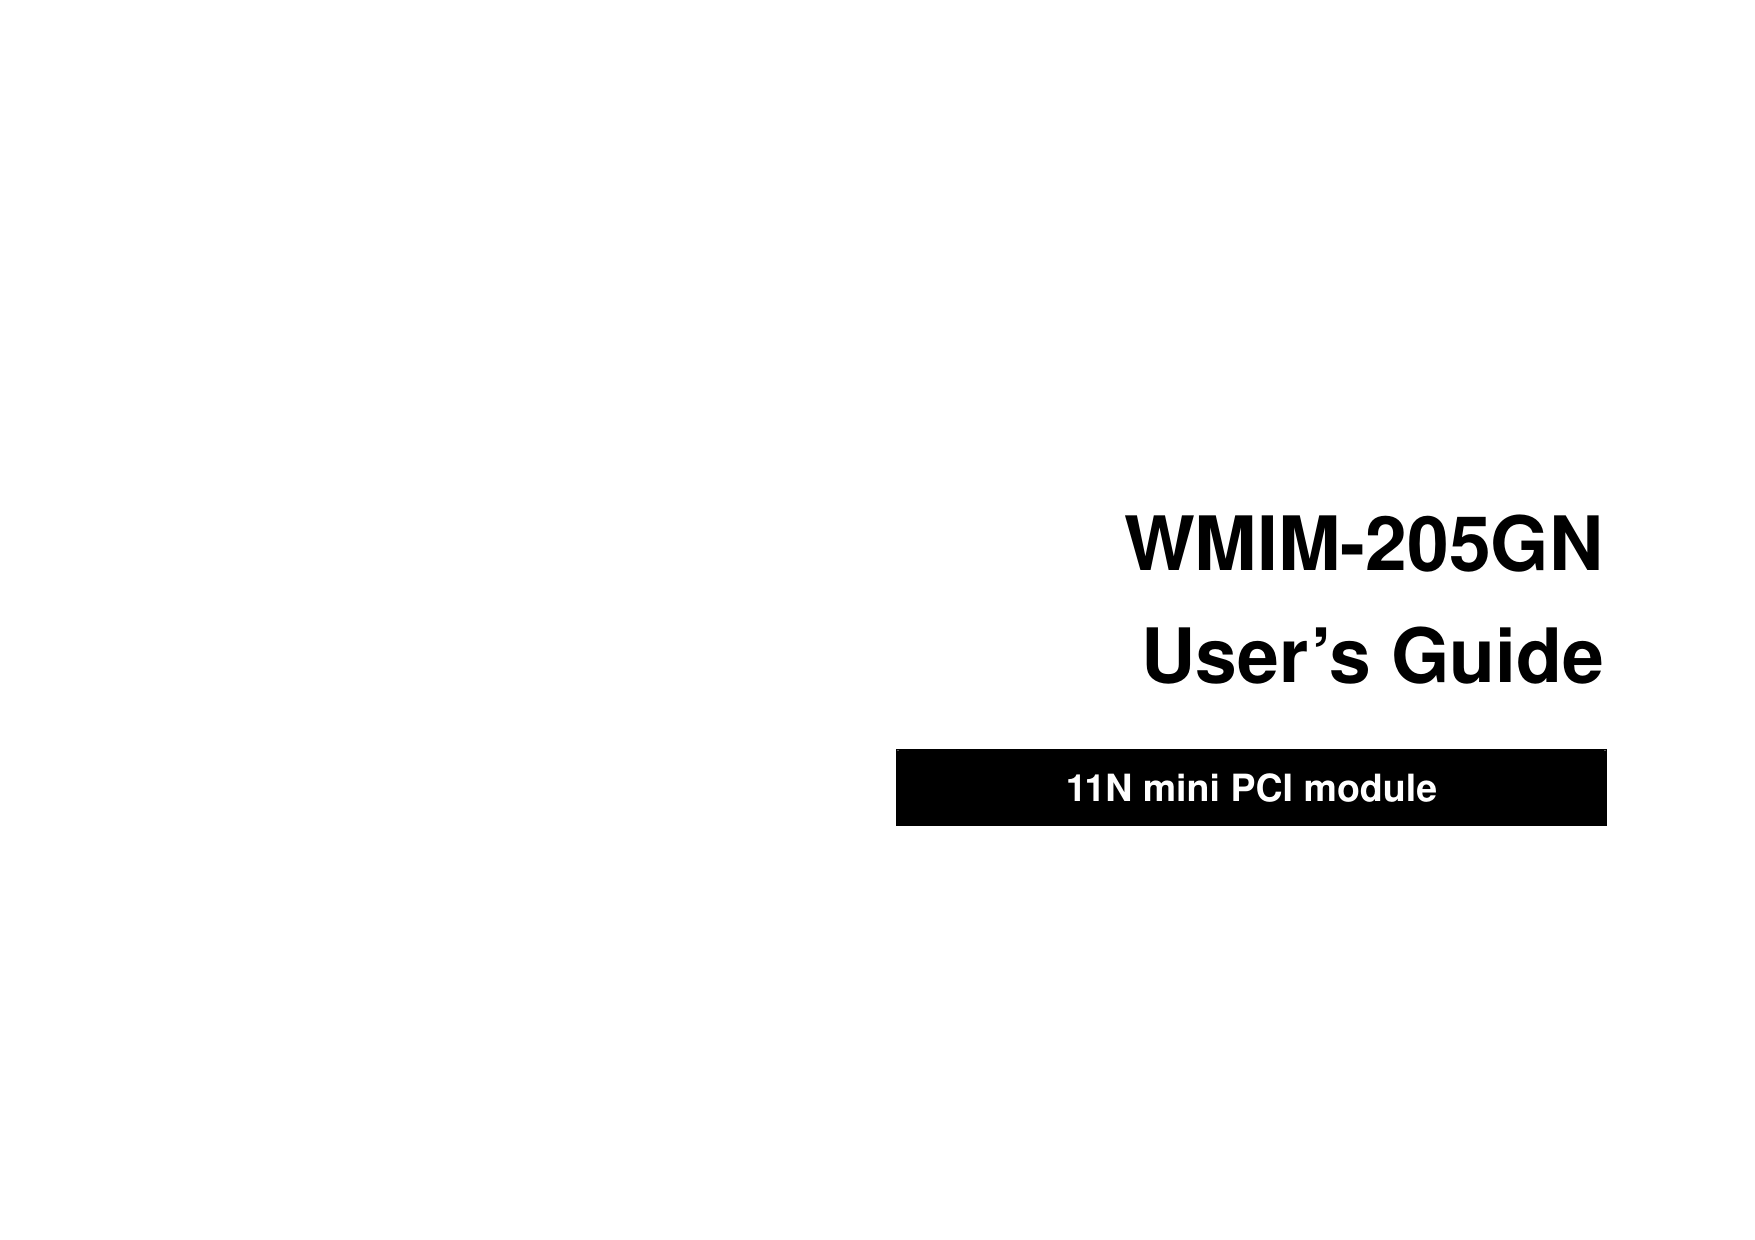                                WMIM-205GN User’s Guide  11N mini PCI module   